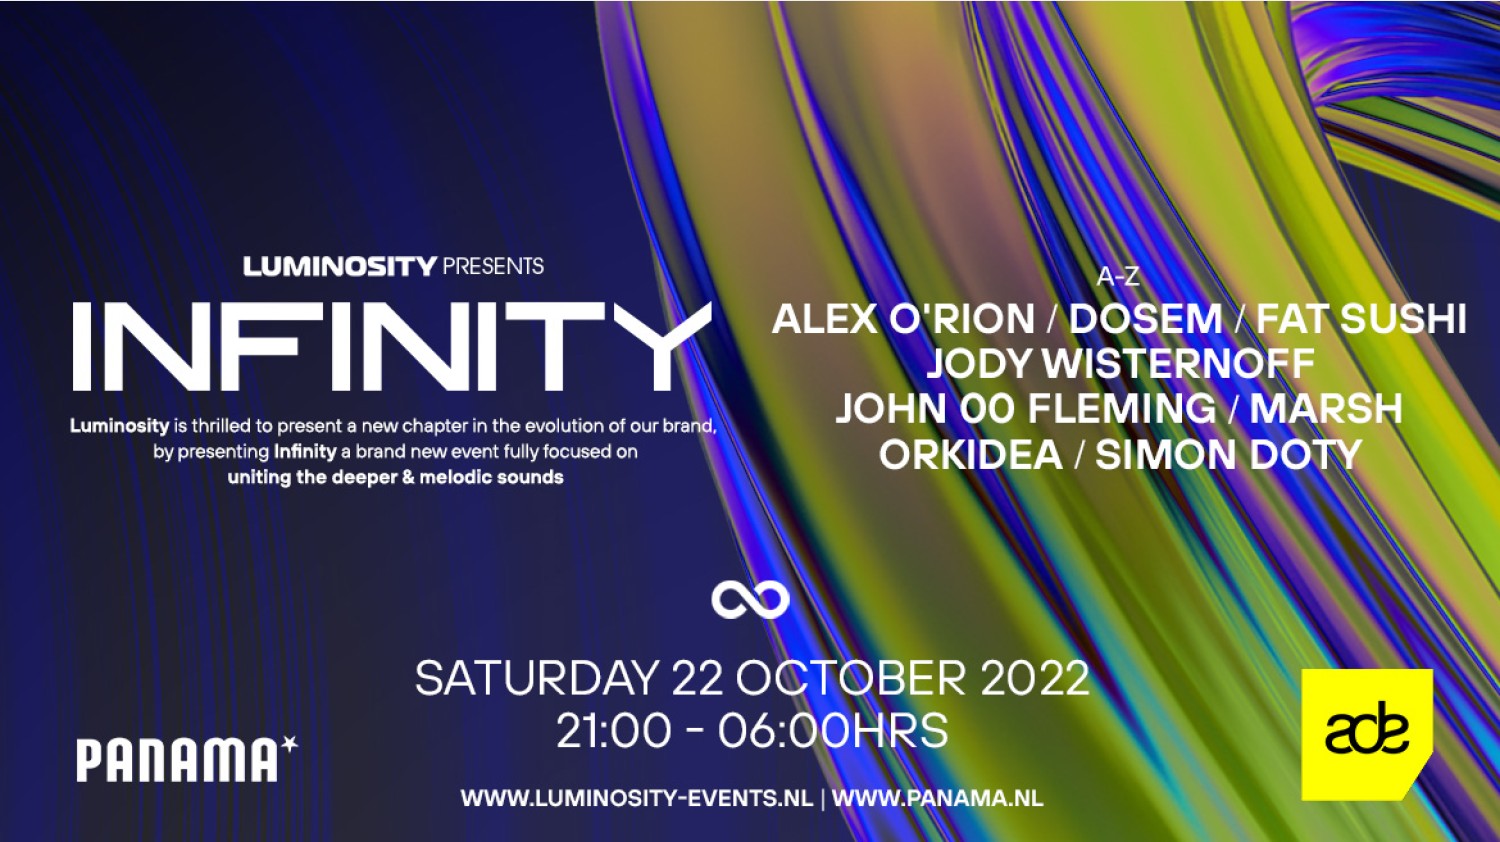 Luminosity Events presents Infinity